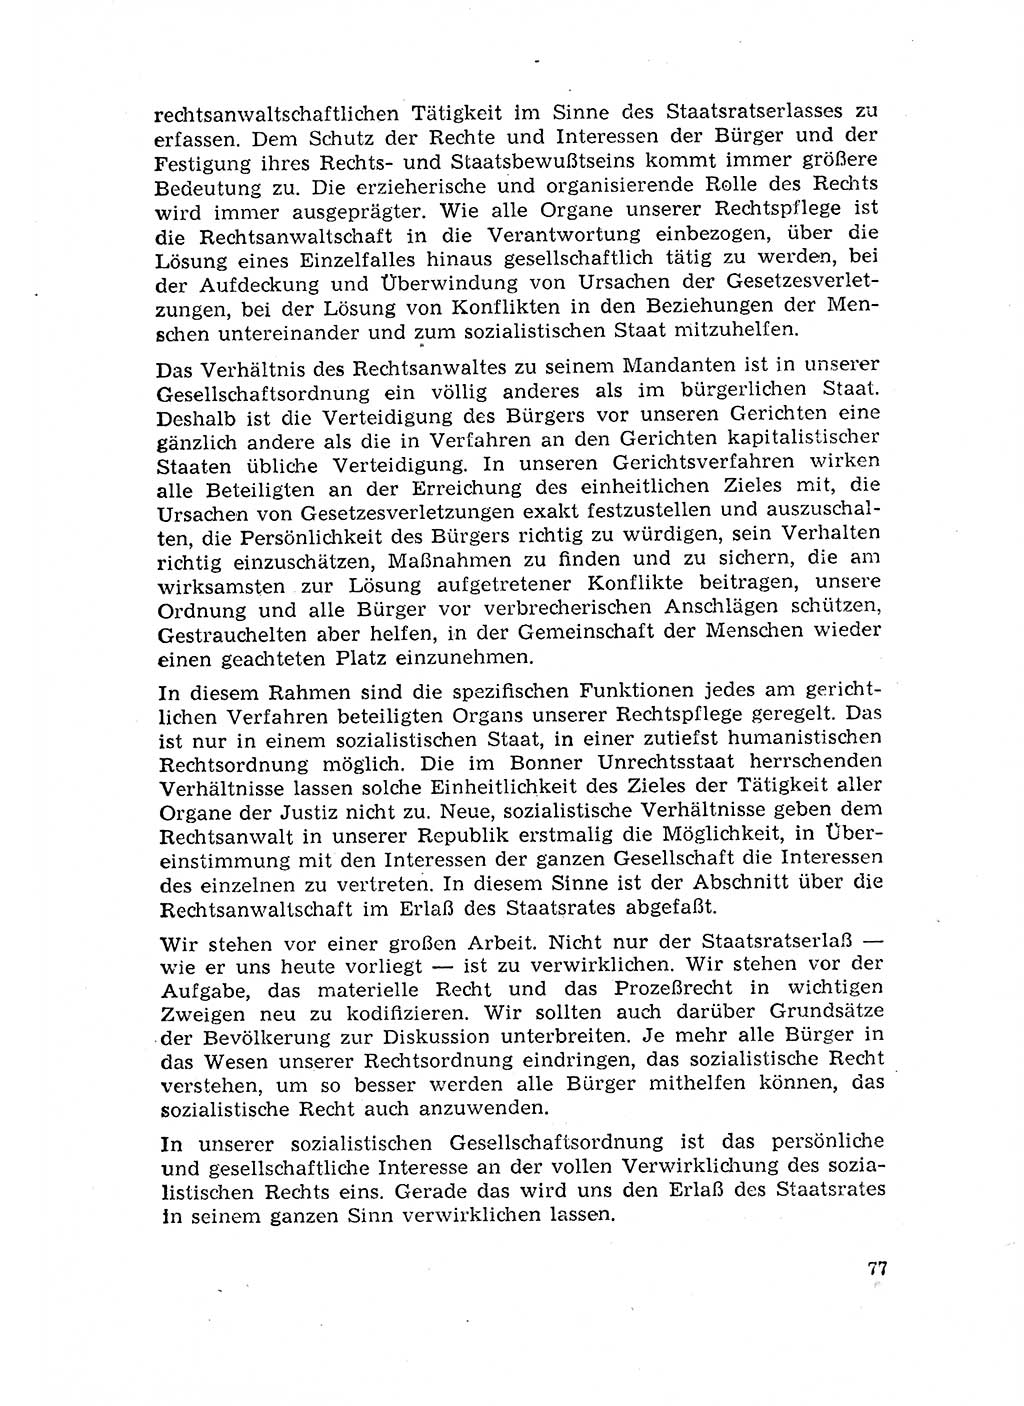 Rechtspflegeerlaß [Deutsche Demokratische Republik (DDR)] 1963, Seite 77 (R.-Pfl.-Erl. DDR 1963, S. 77)